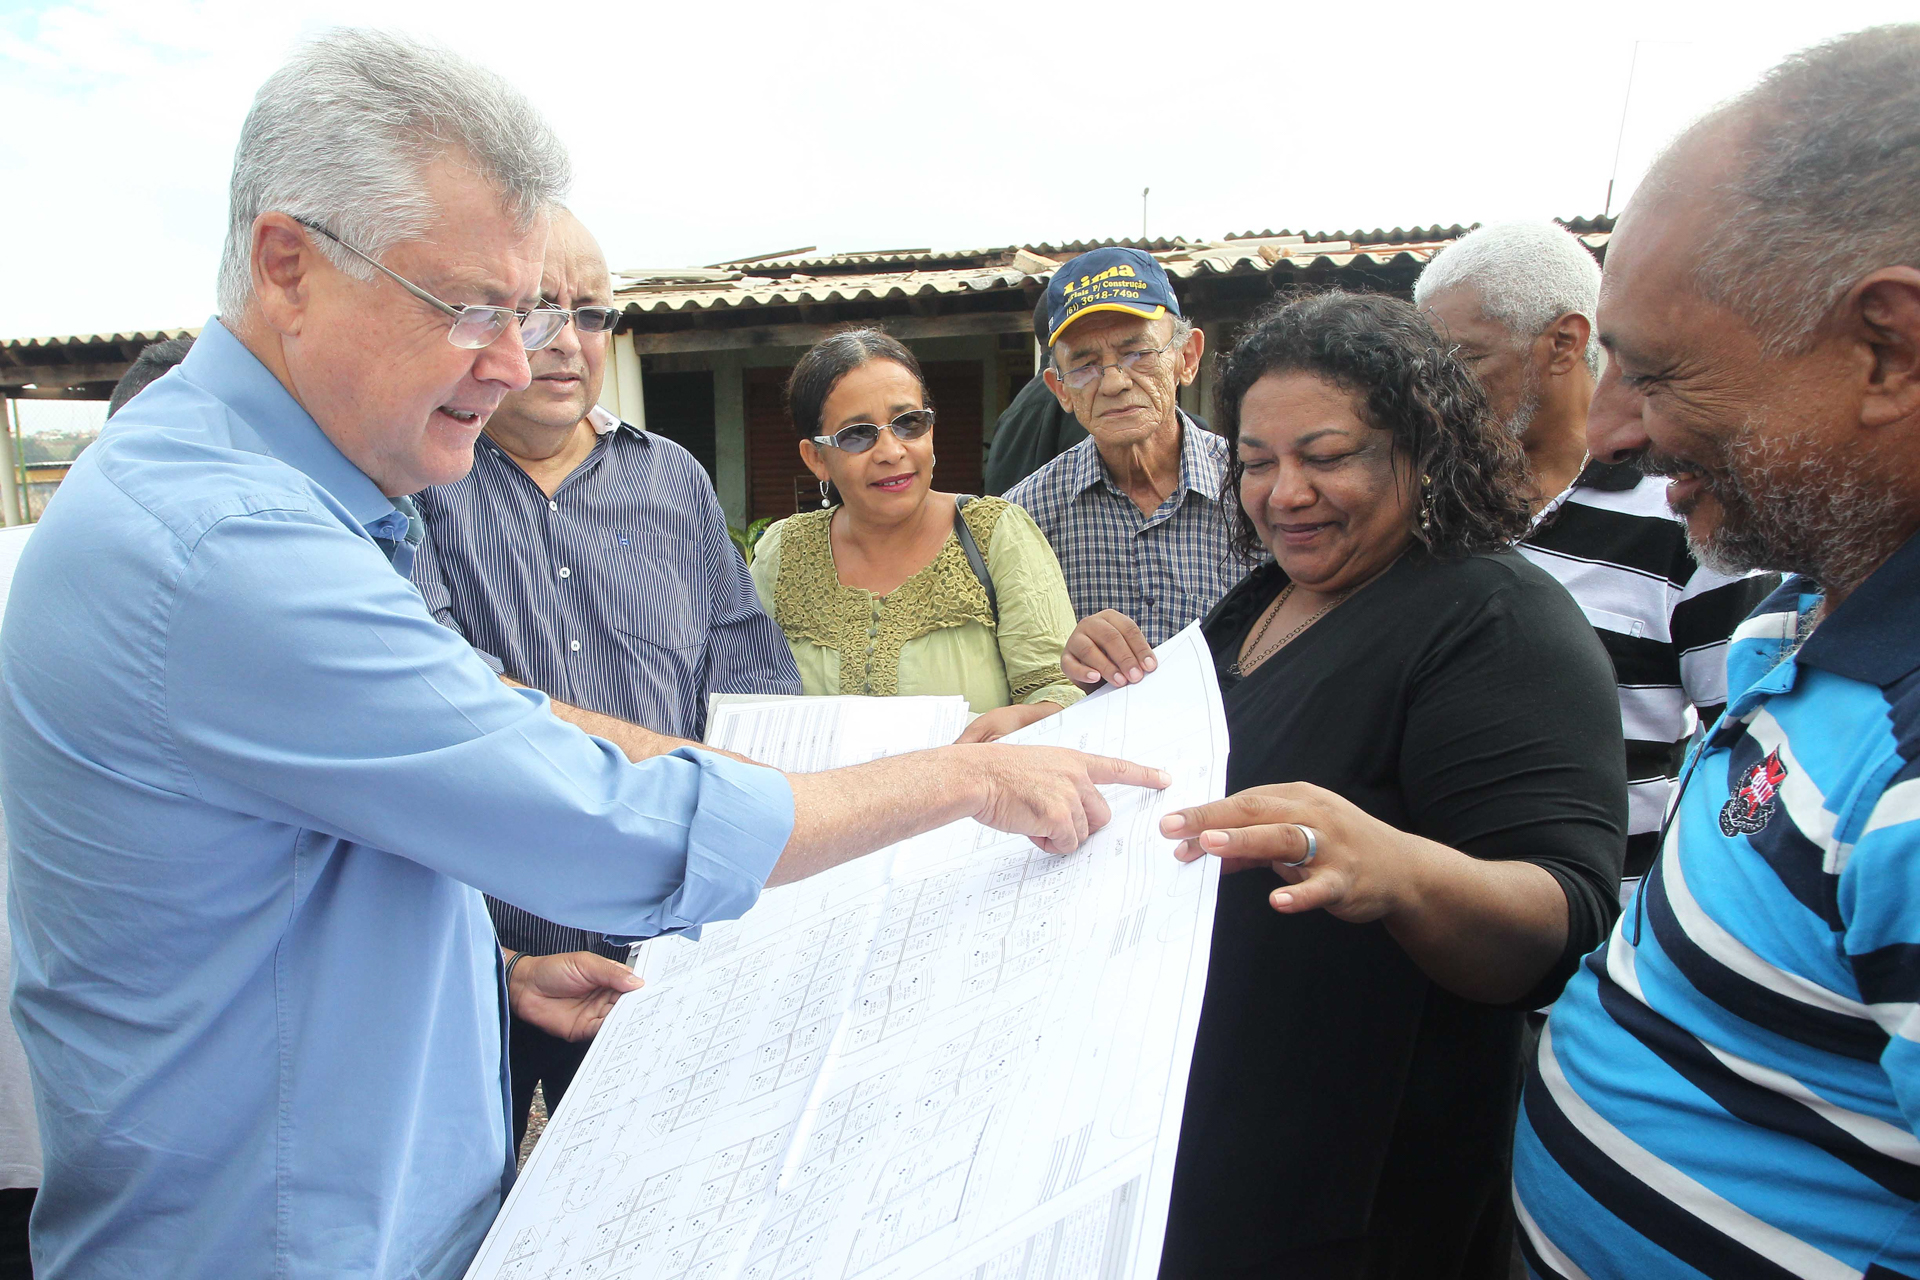 Antes da comemoração da entrega das escrituras, o governador Rodrigo Rollemberg visitou a Feira Permanente do Recanto das Emas, na Quadra 306, da região administrativa